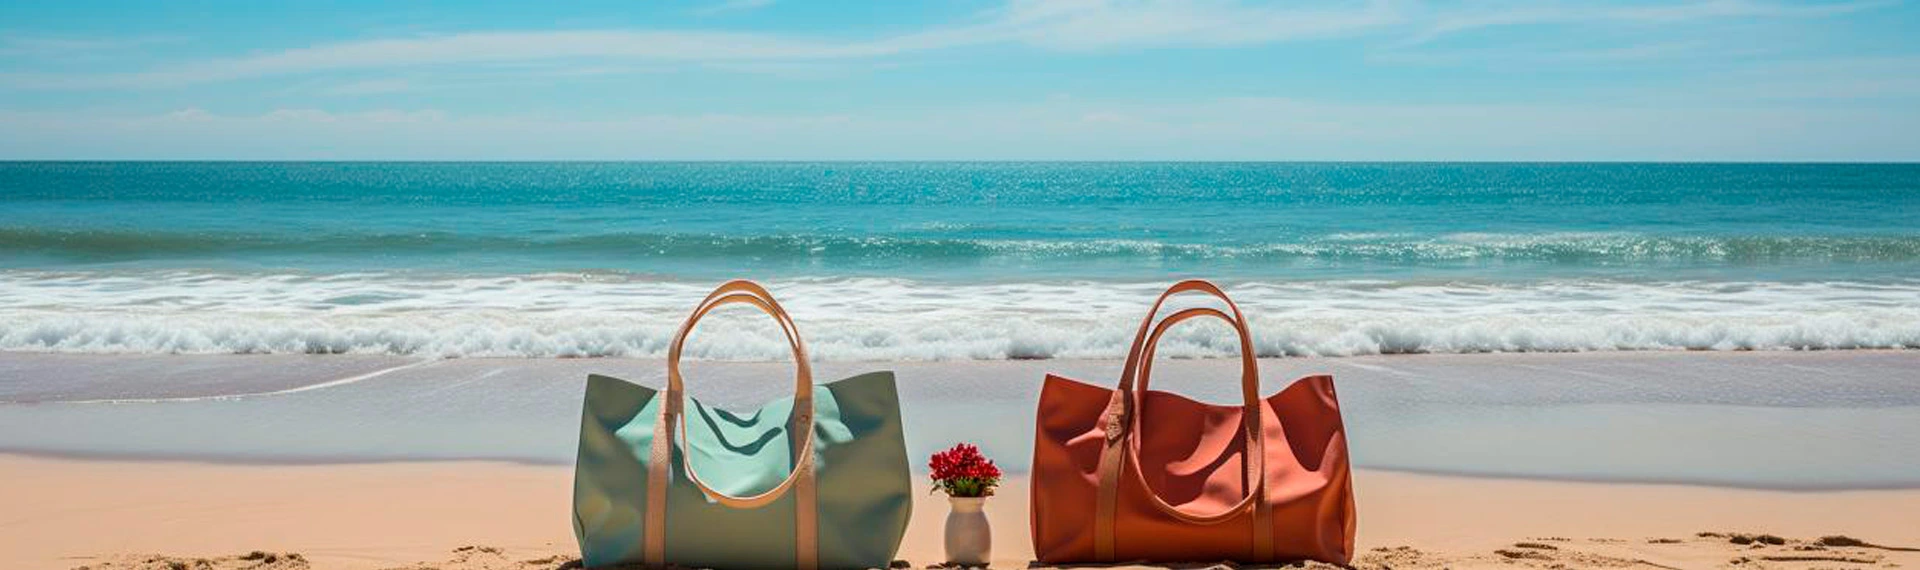 Bulk Canvas Beach Bags - Wholesale Canvas Beach Tote Bags